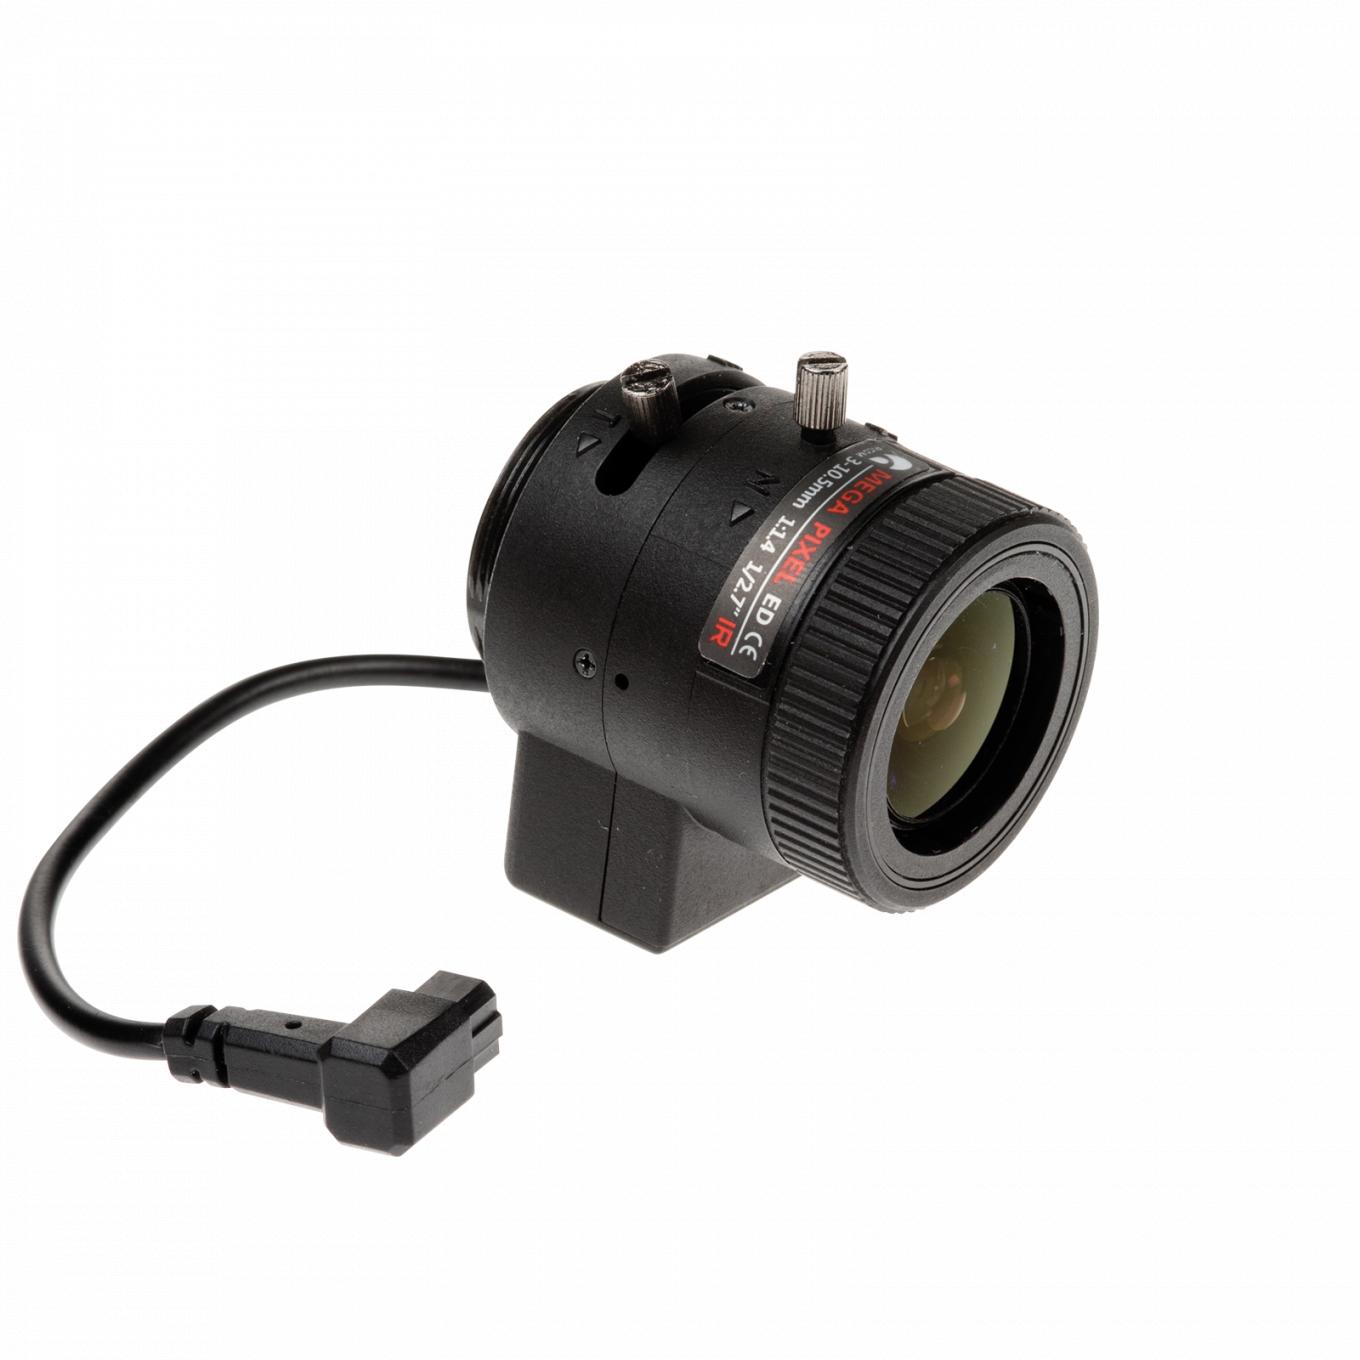 AXIS Lens CS 3-10.5 mm F1.4 DC-Iris 2 MP preta com fio